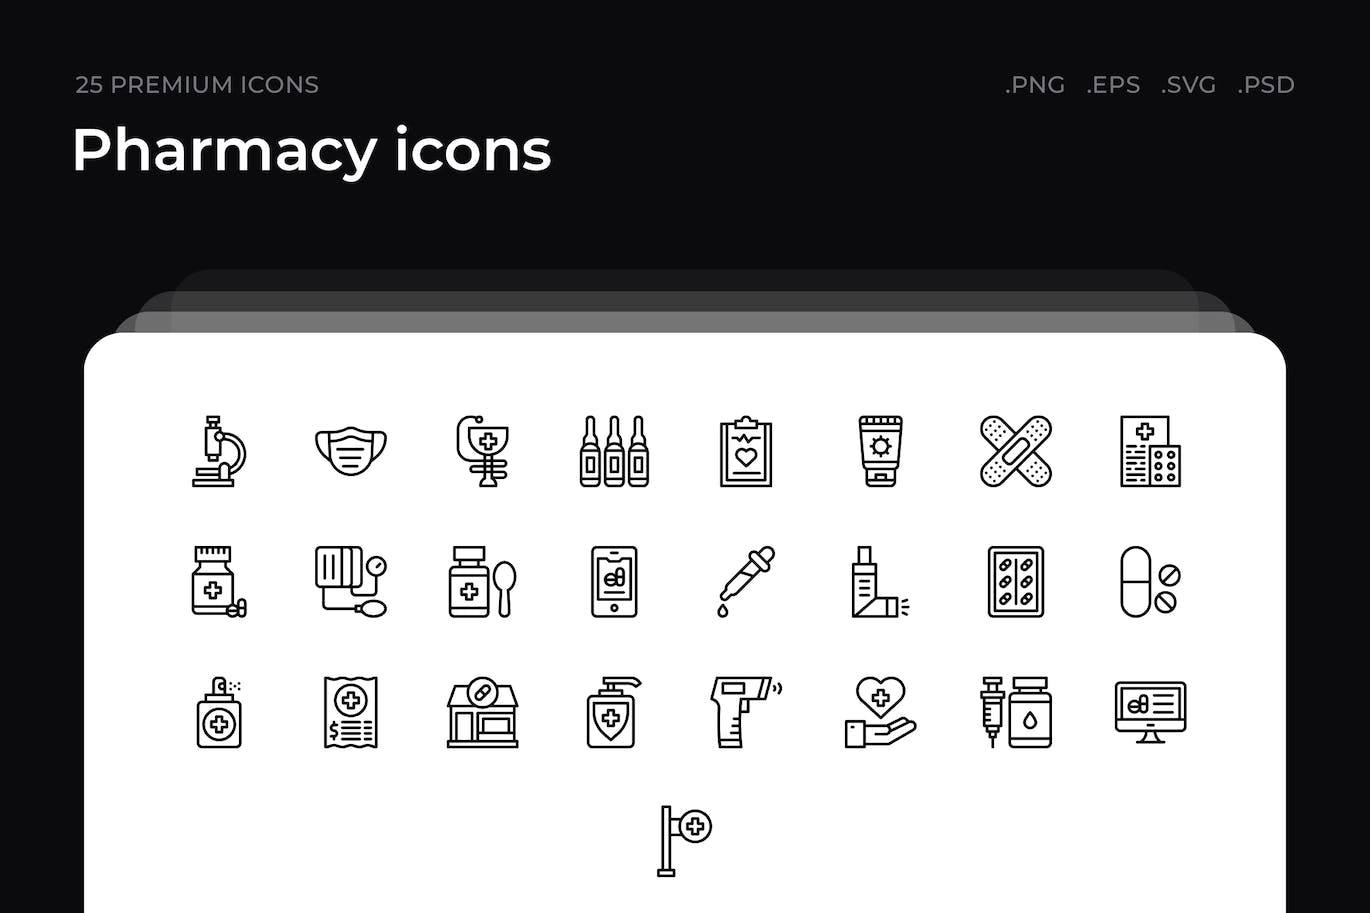 25枚药房主题简约线条矢量图标 Pharmacy icons 图标素材 第1张